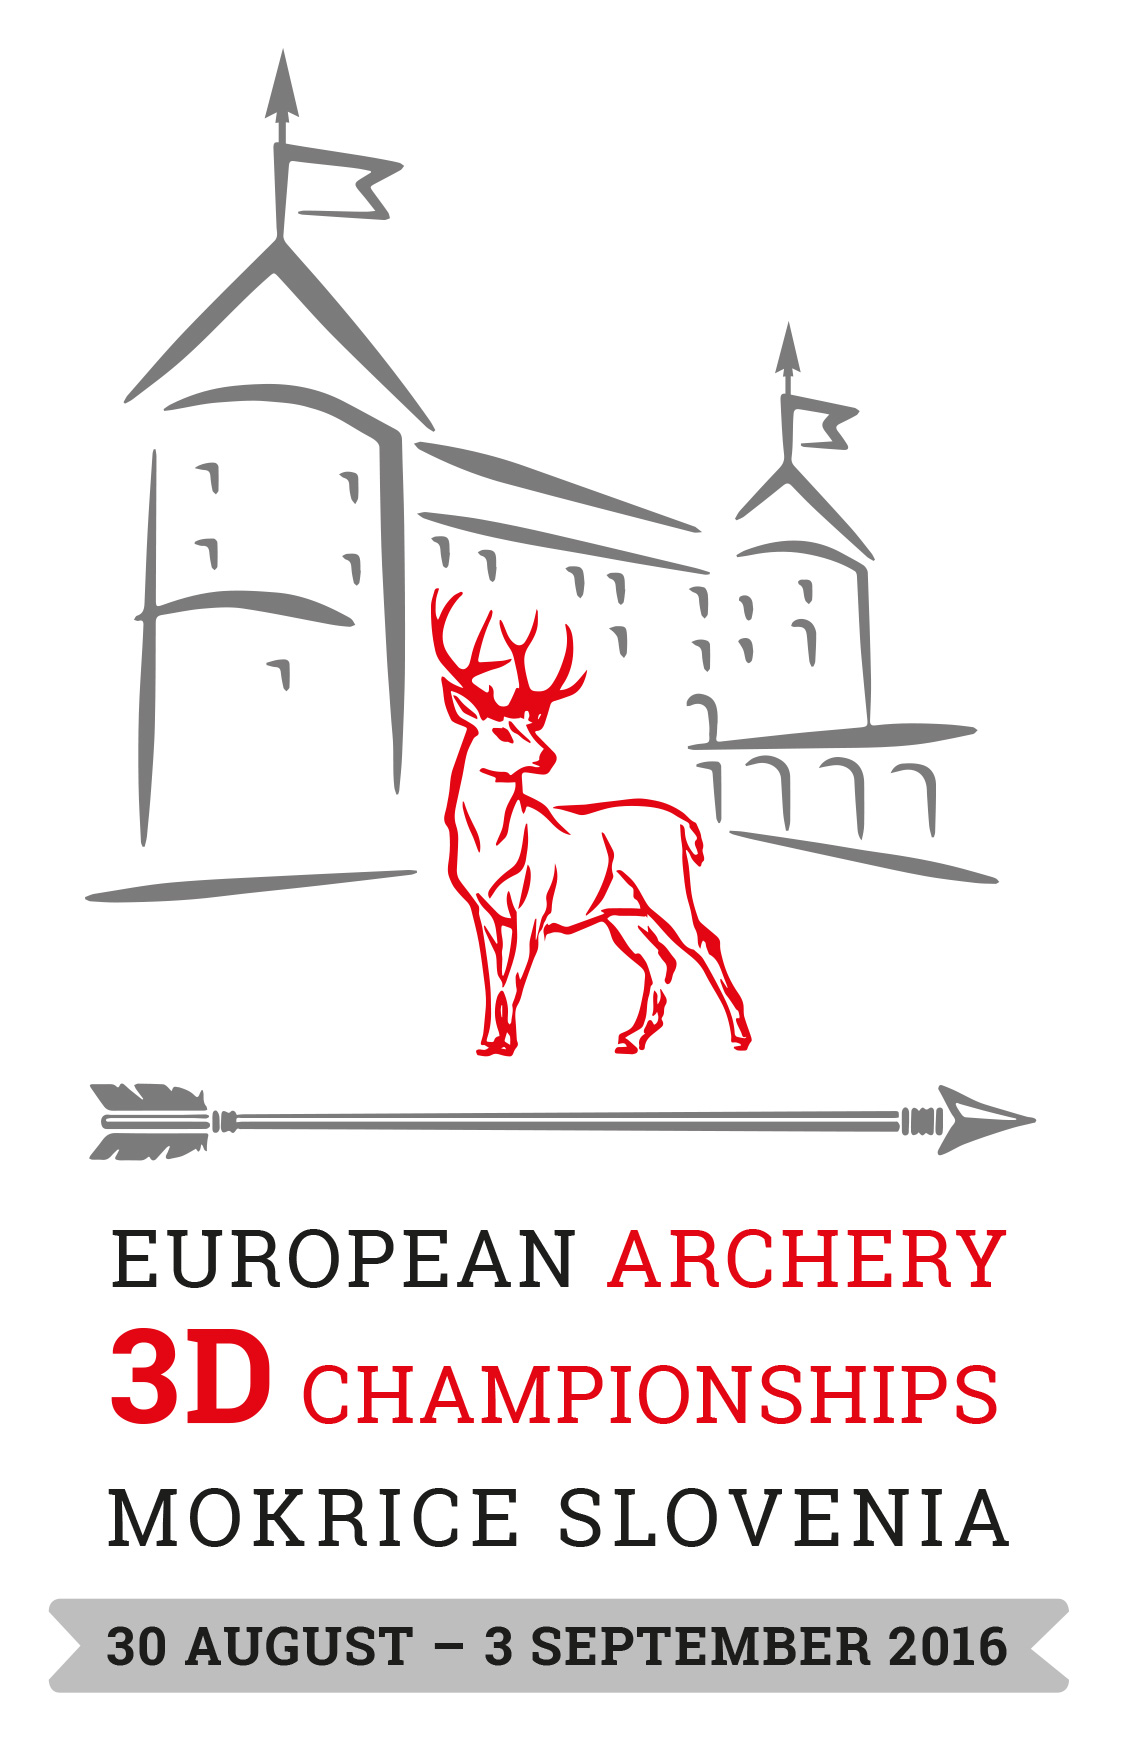 Campionati Europei 3D